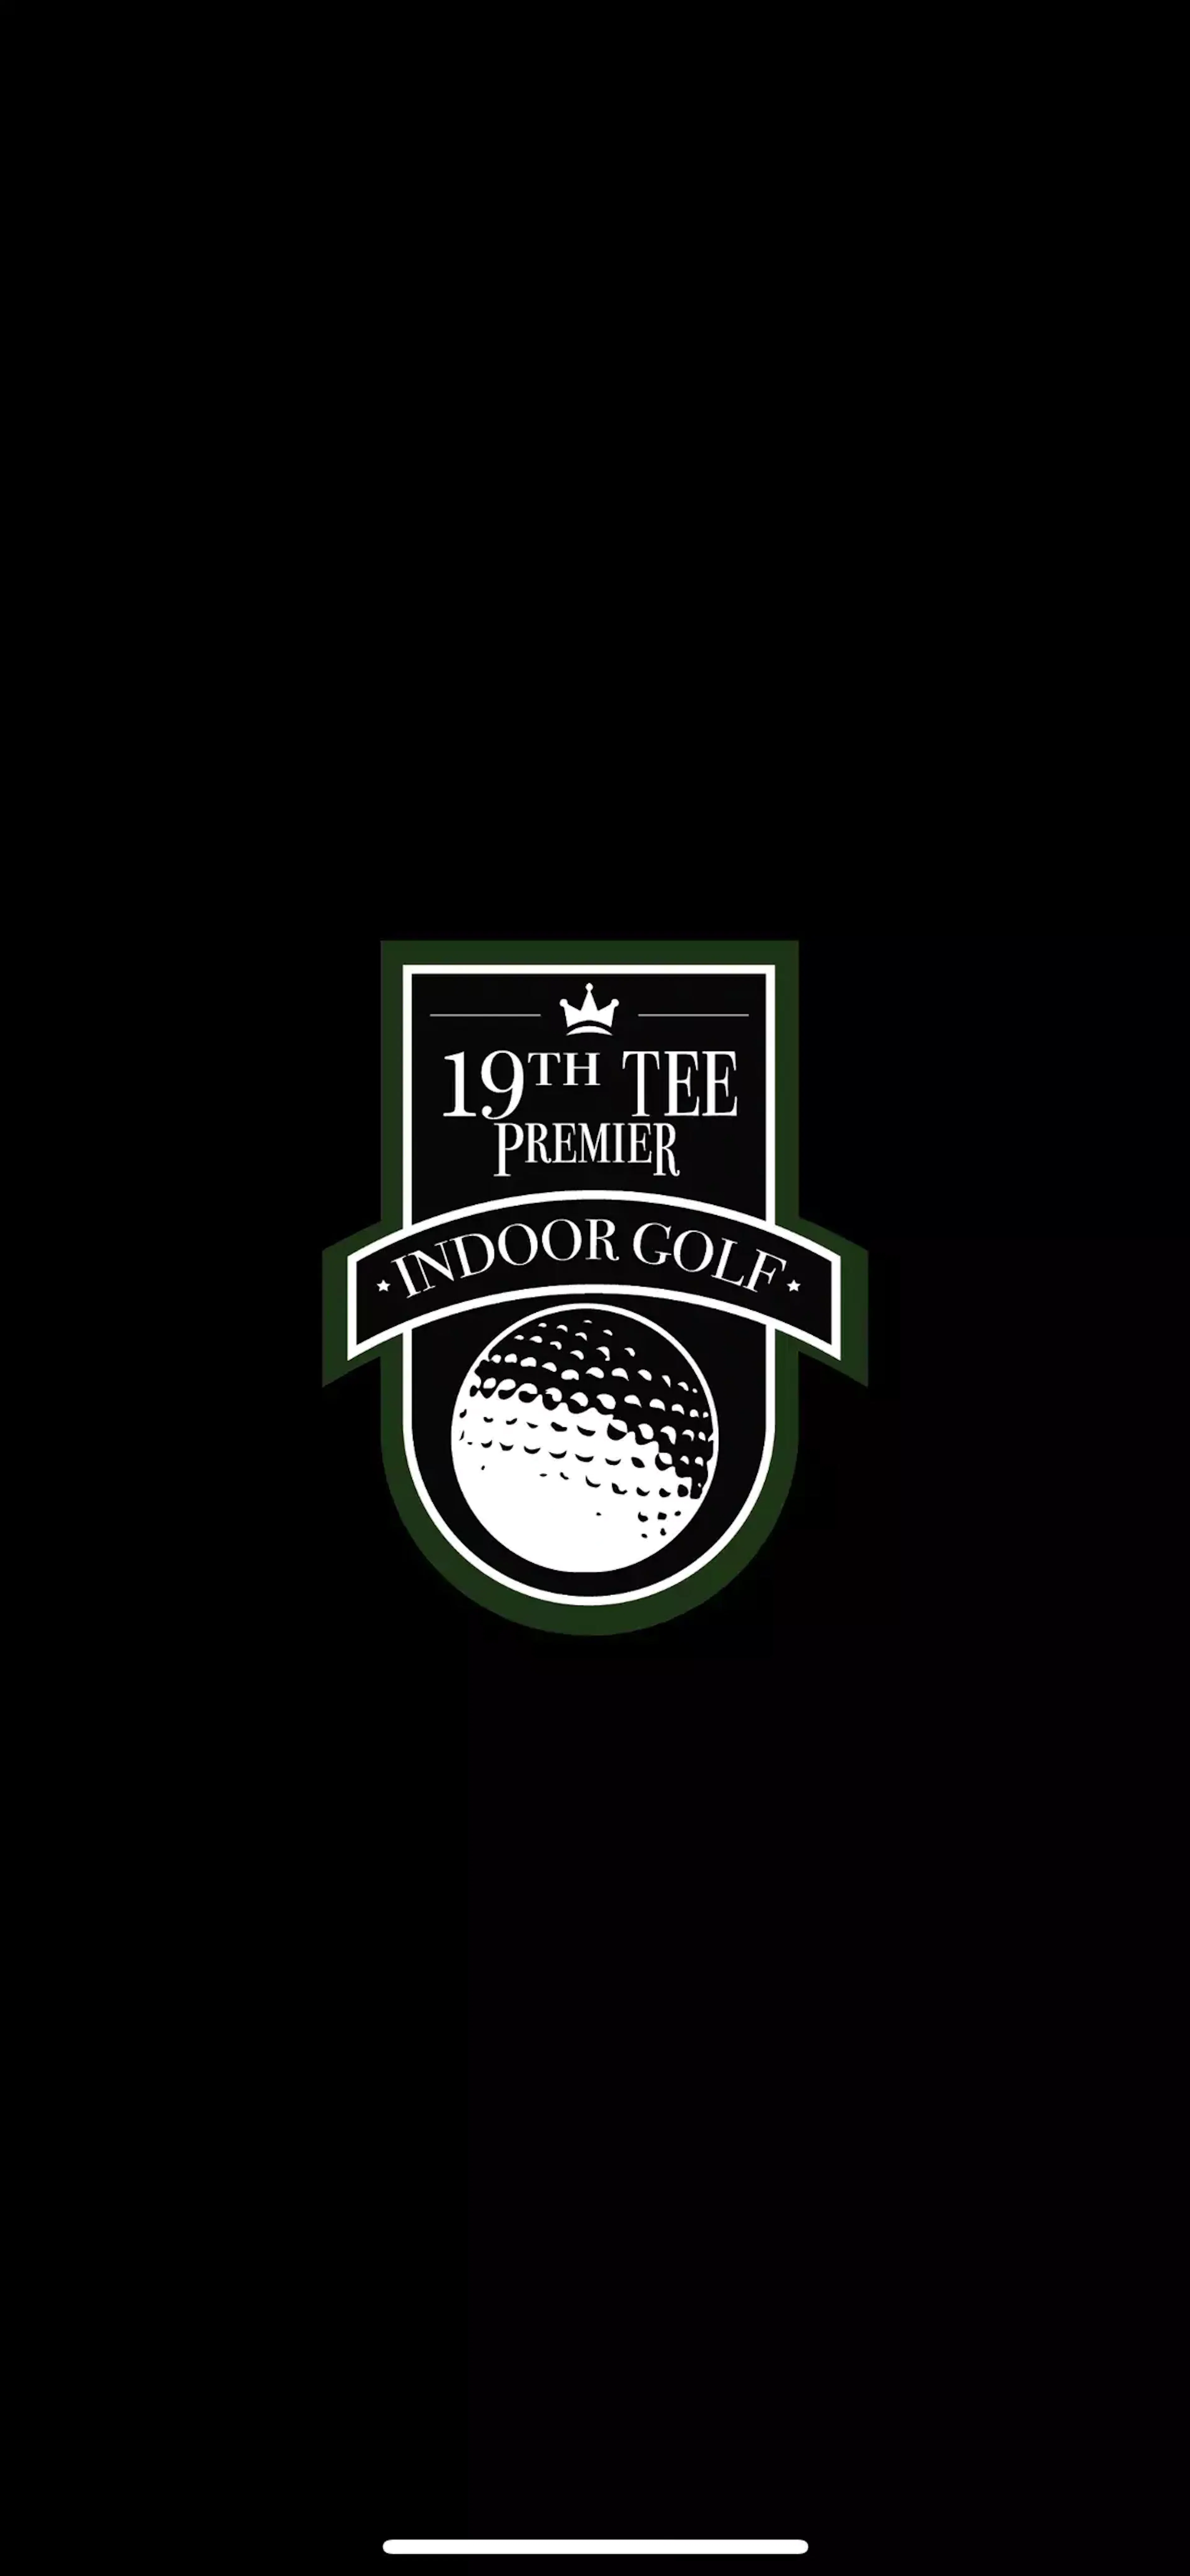 19th tee premier indoor golf